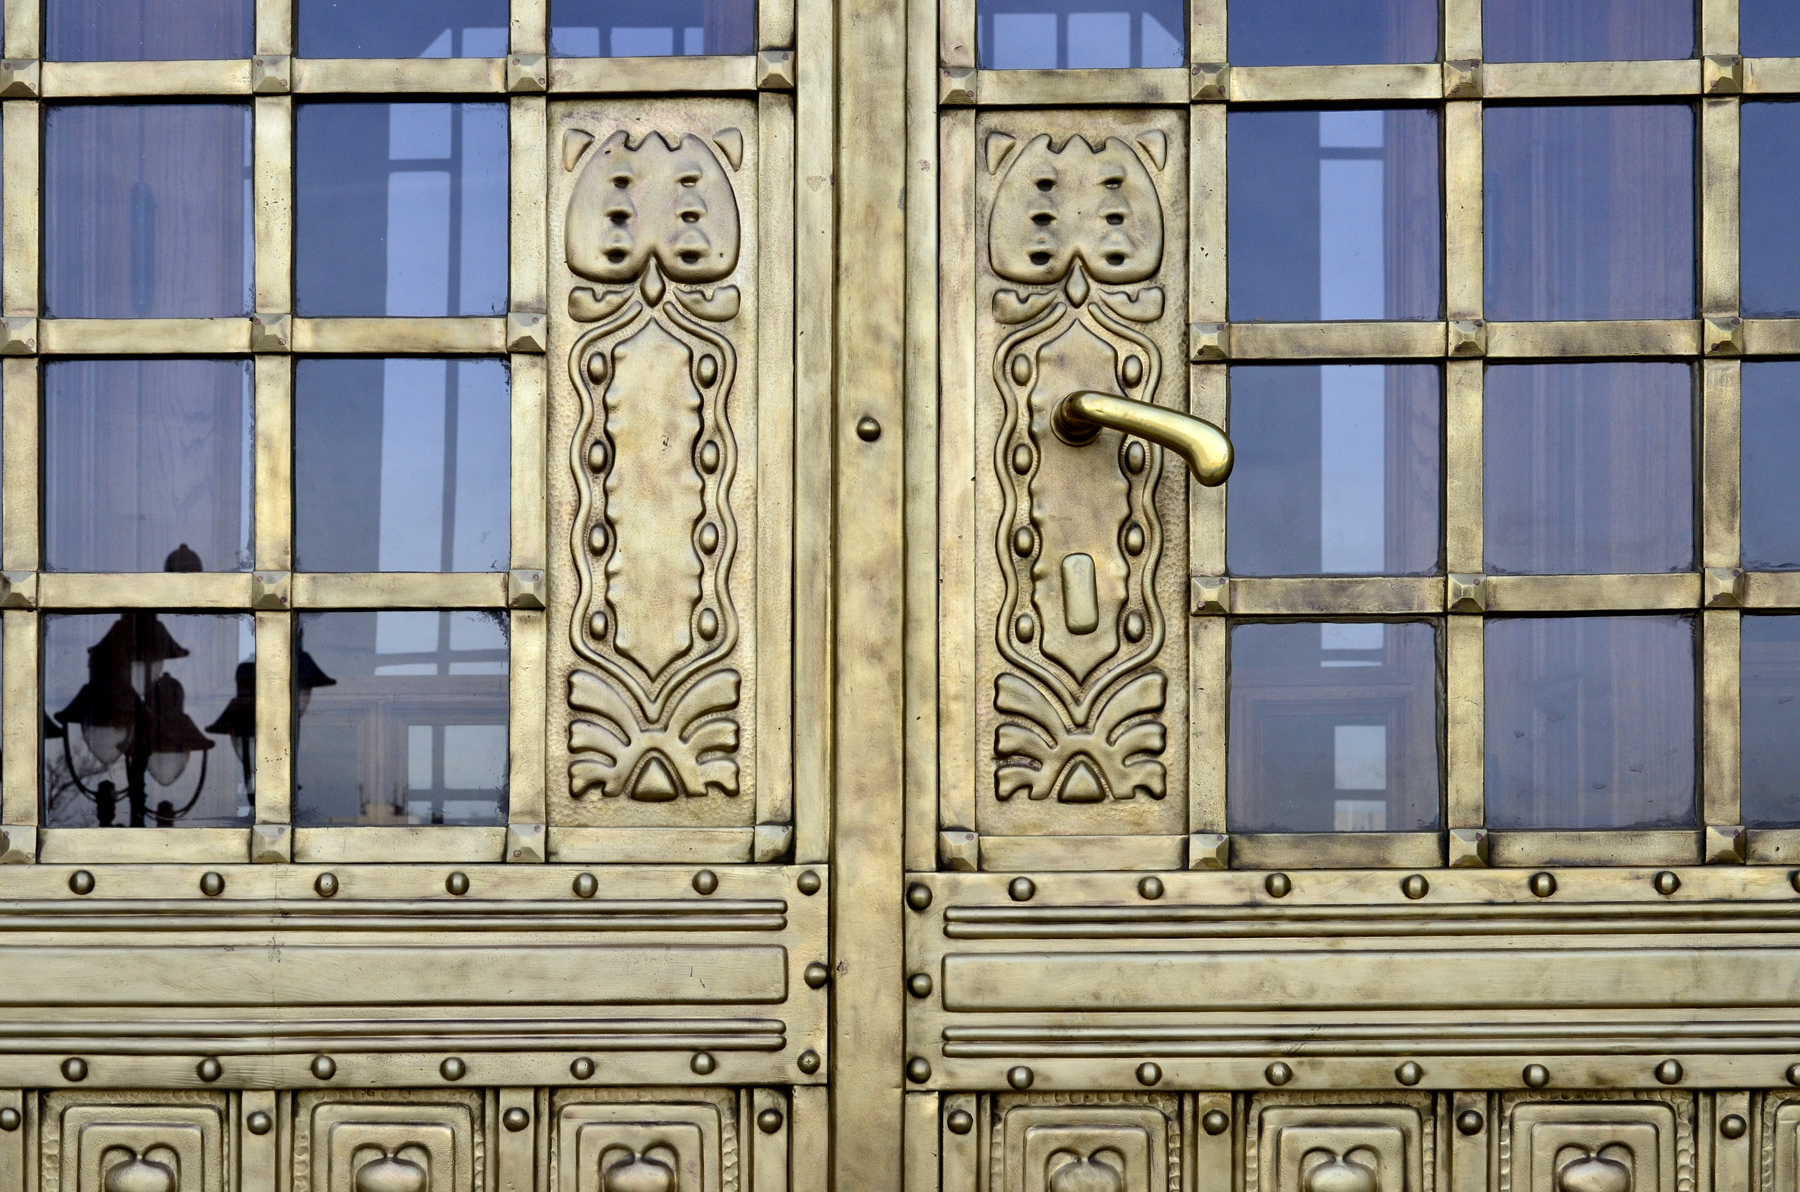 Budapesti Műszaki Egyetem K épület főbejárati portálok felújítása